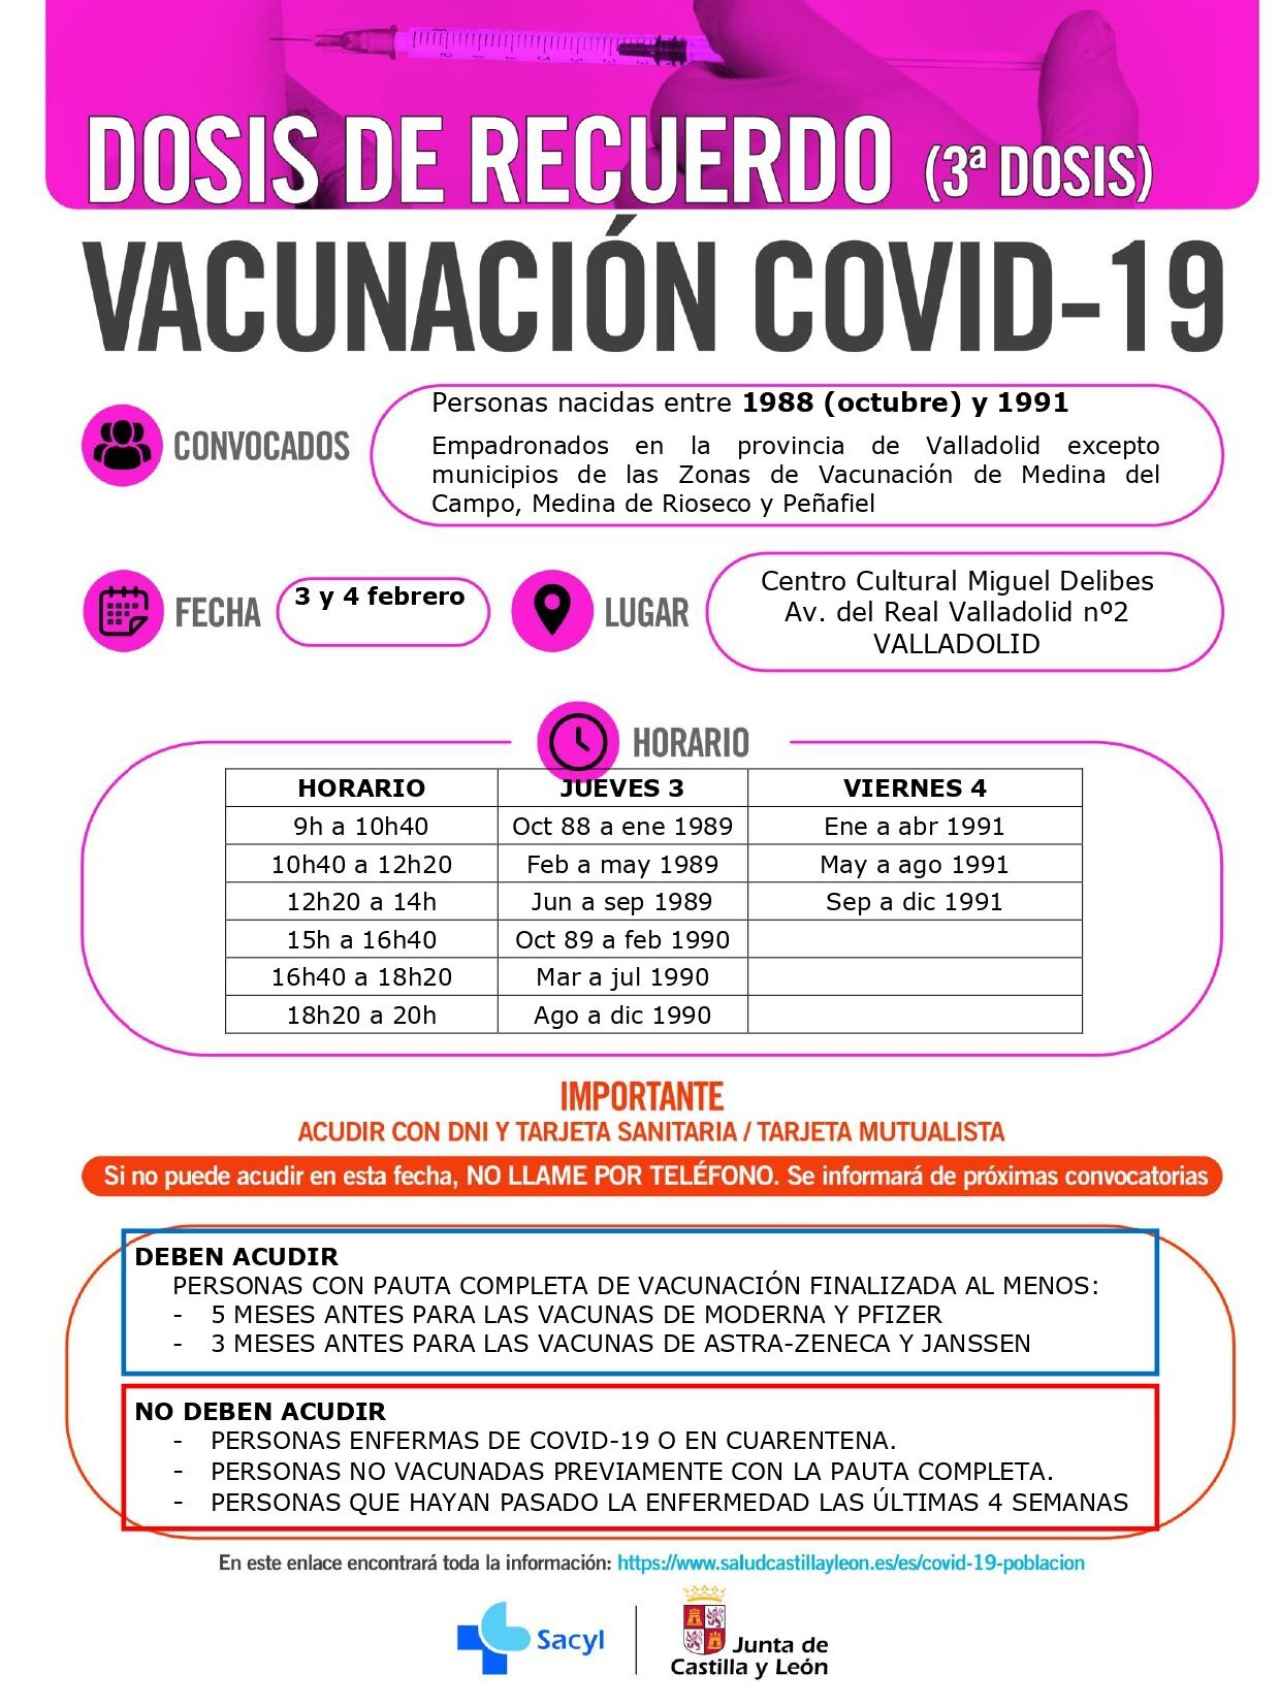 Valladolid vacunacion 89-91 junta